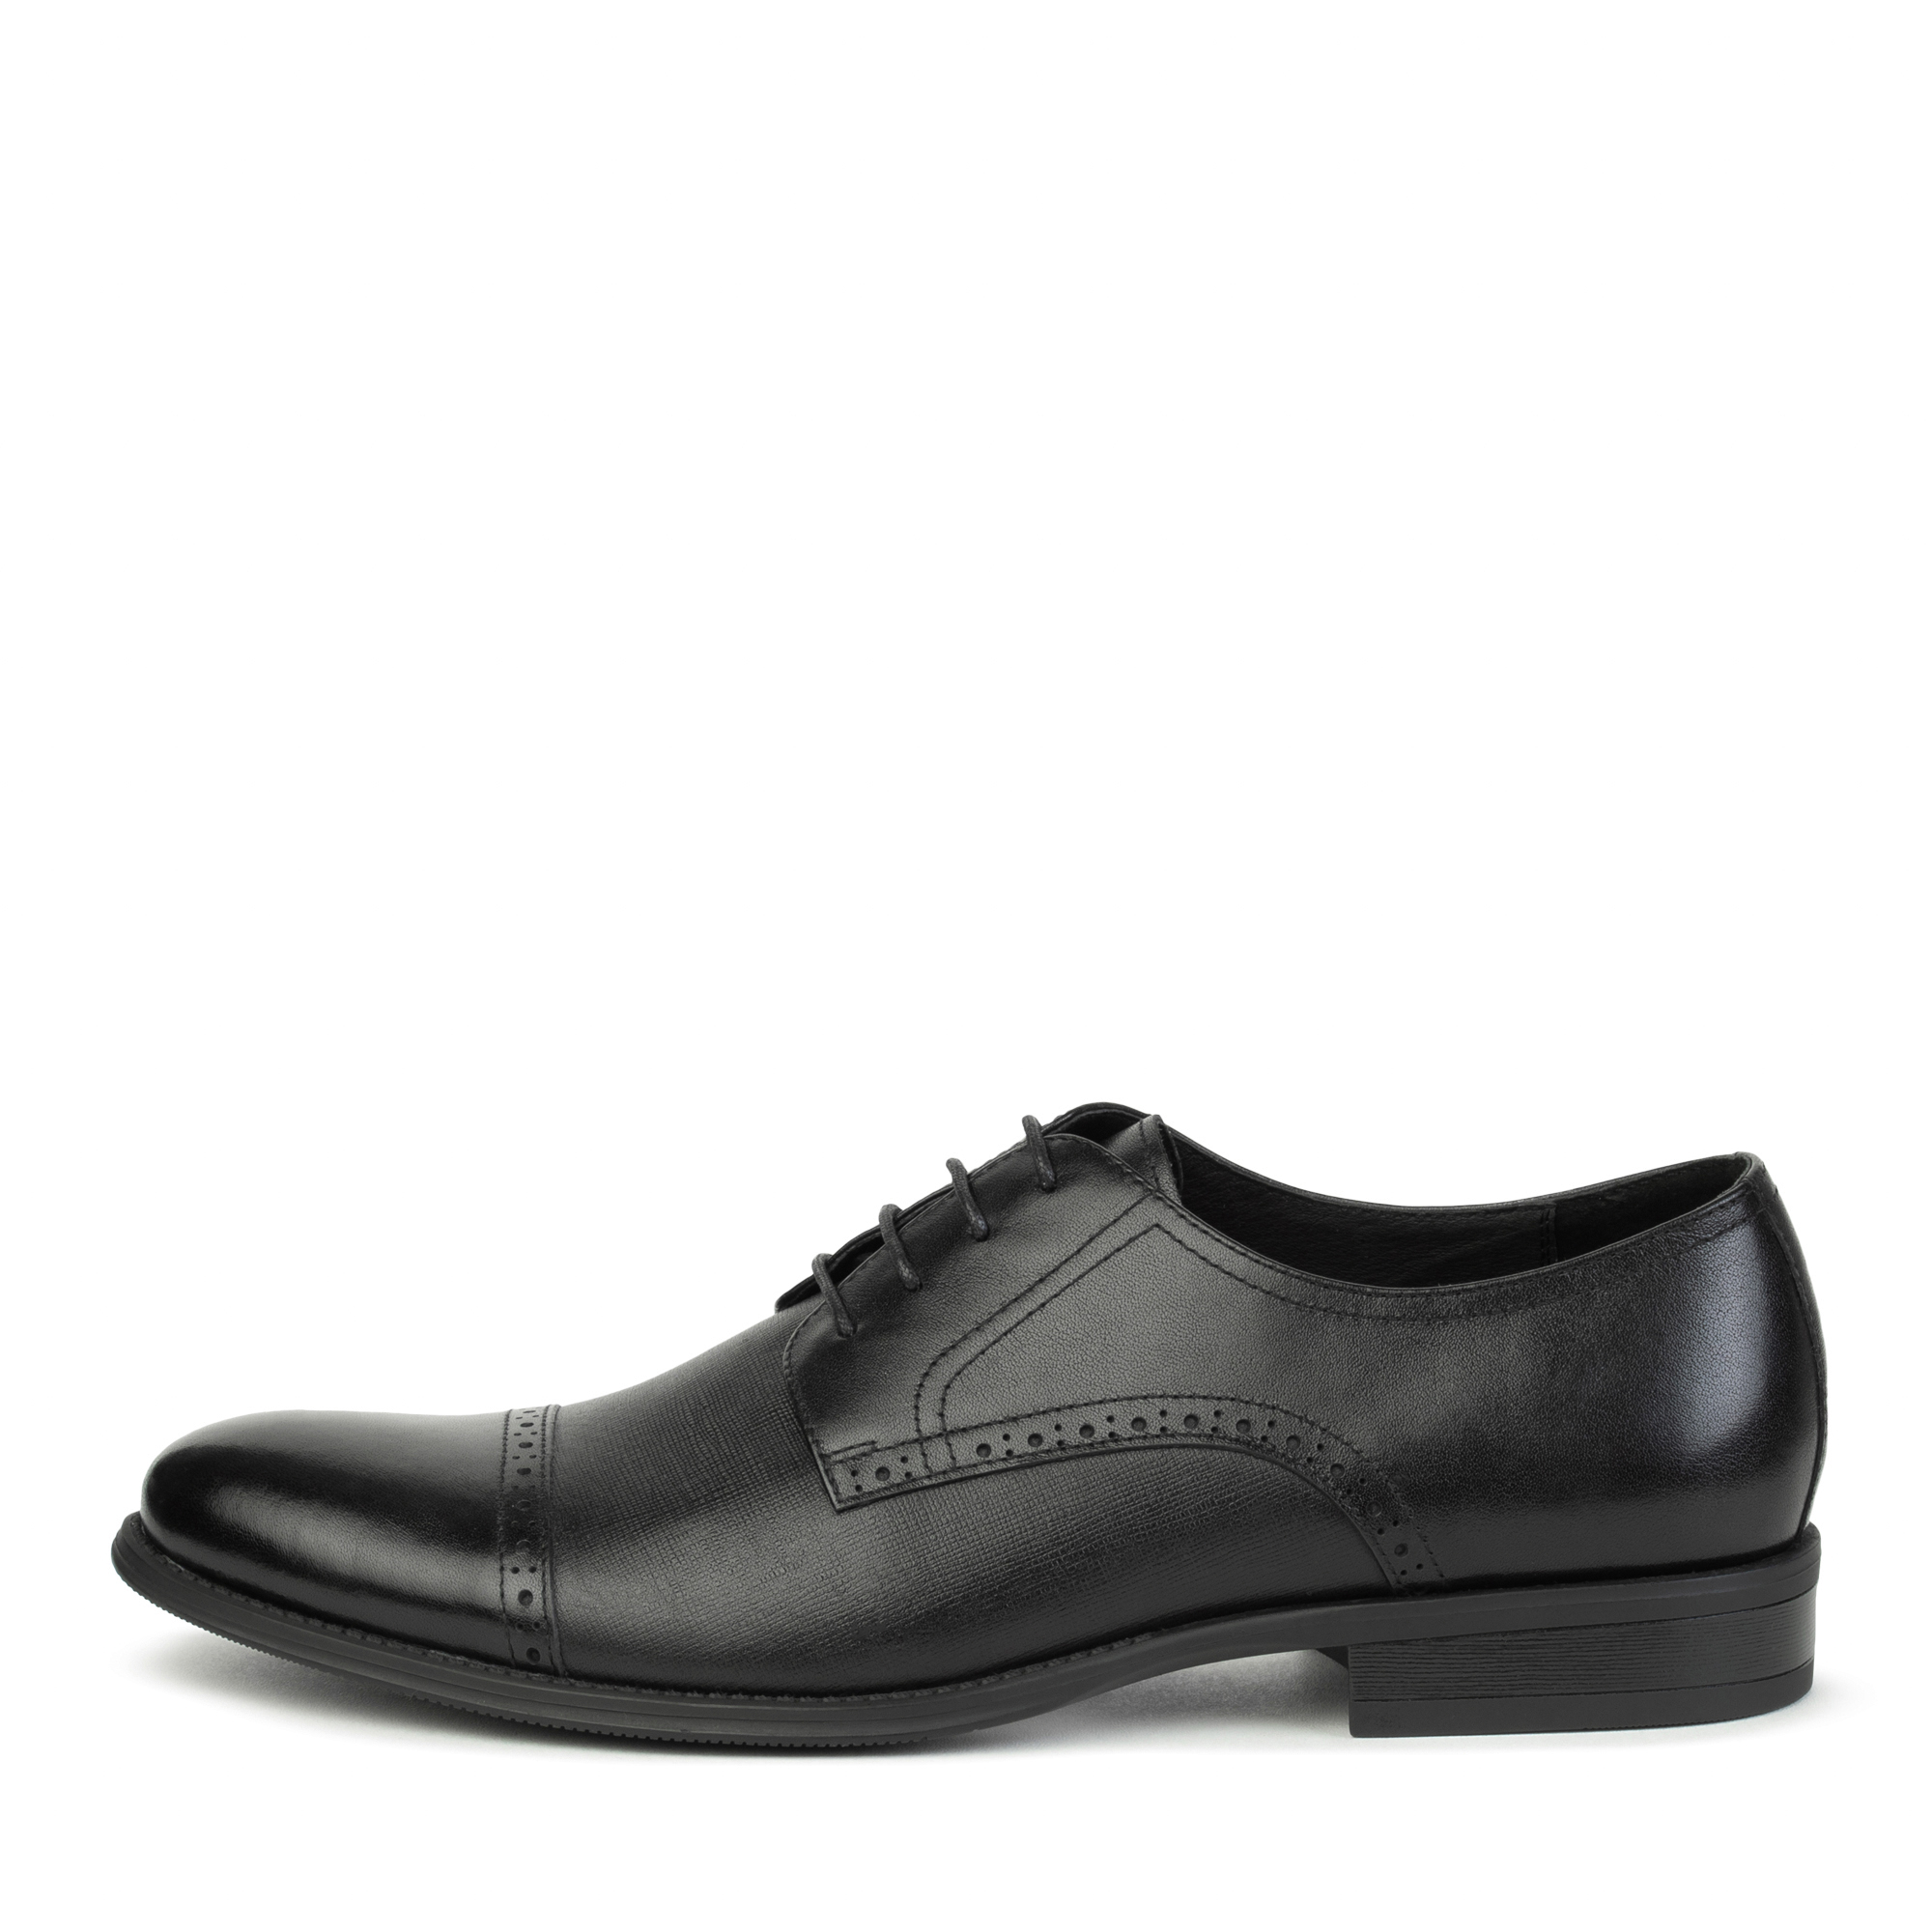 Туфли Thomas Munz 058-686A-1602, цвет черный, размер 40 - фото 1